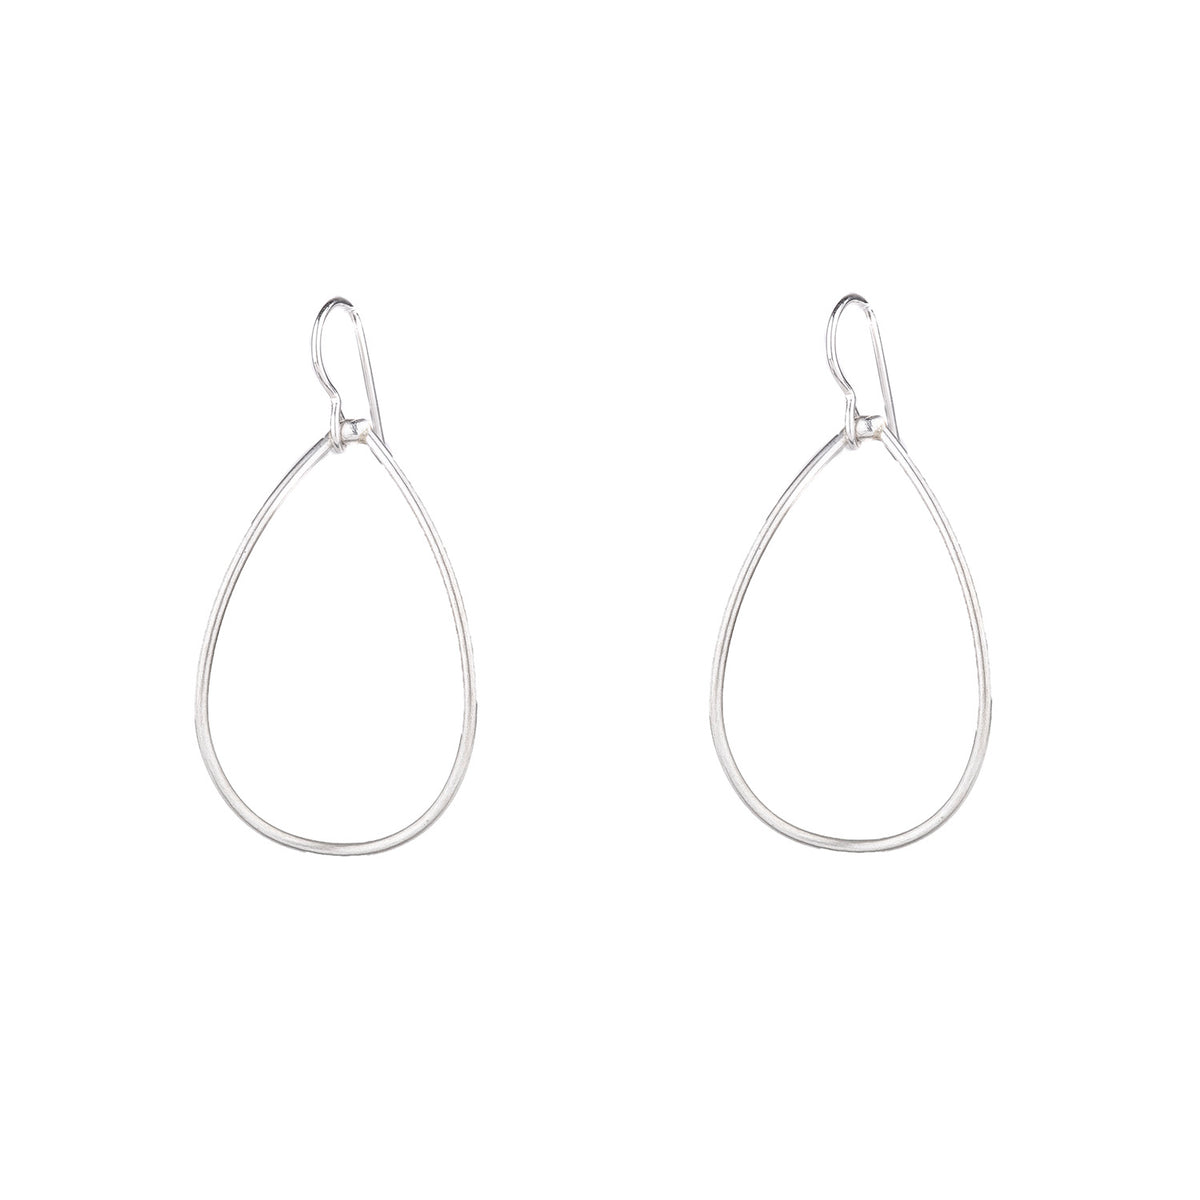 medium Gabrielle earrings - simple lightweight teardrop earrings